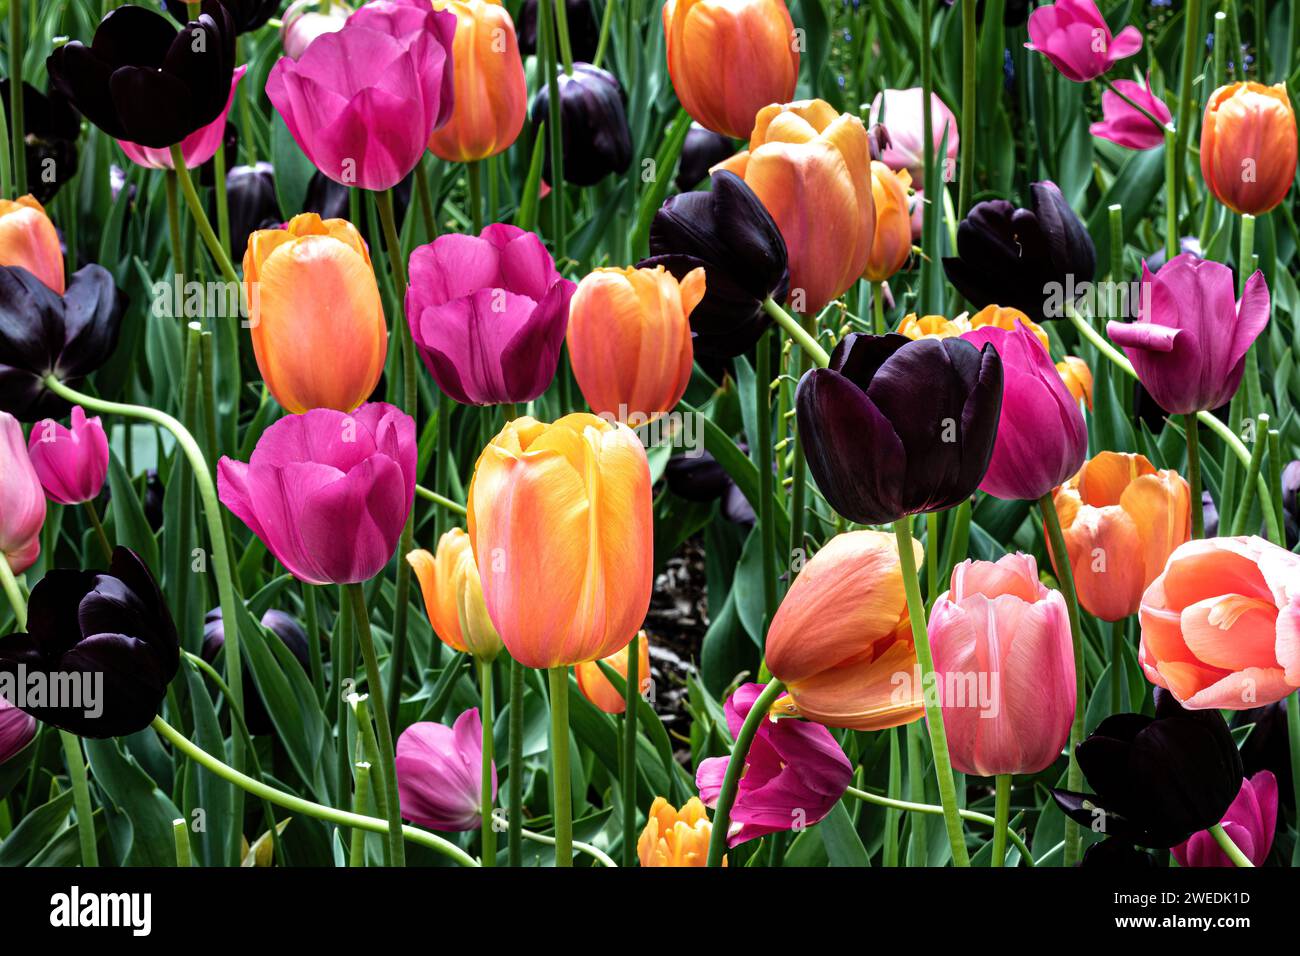 Nahaufnahme des Tulpenbettes, Blumen in verschiedenen Farben. Im Missouri Botanical Garden, St. Louis. Stockfoto